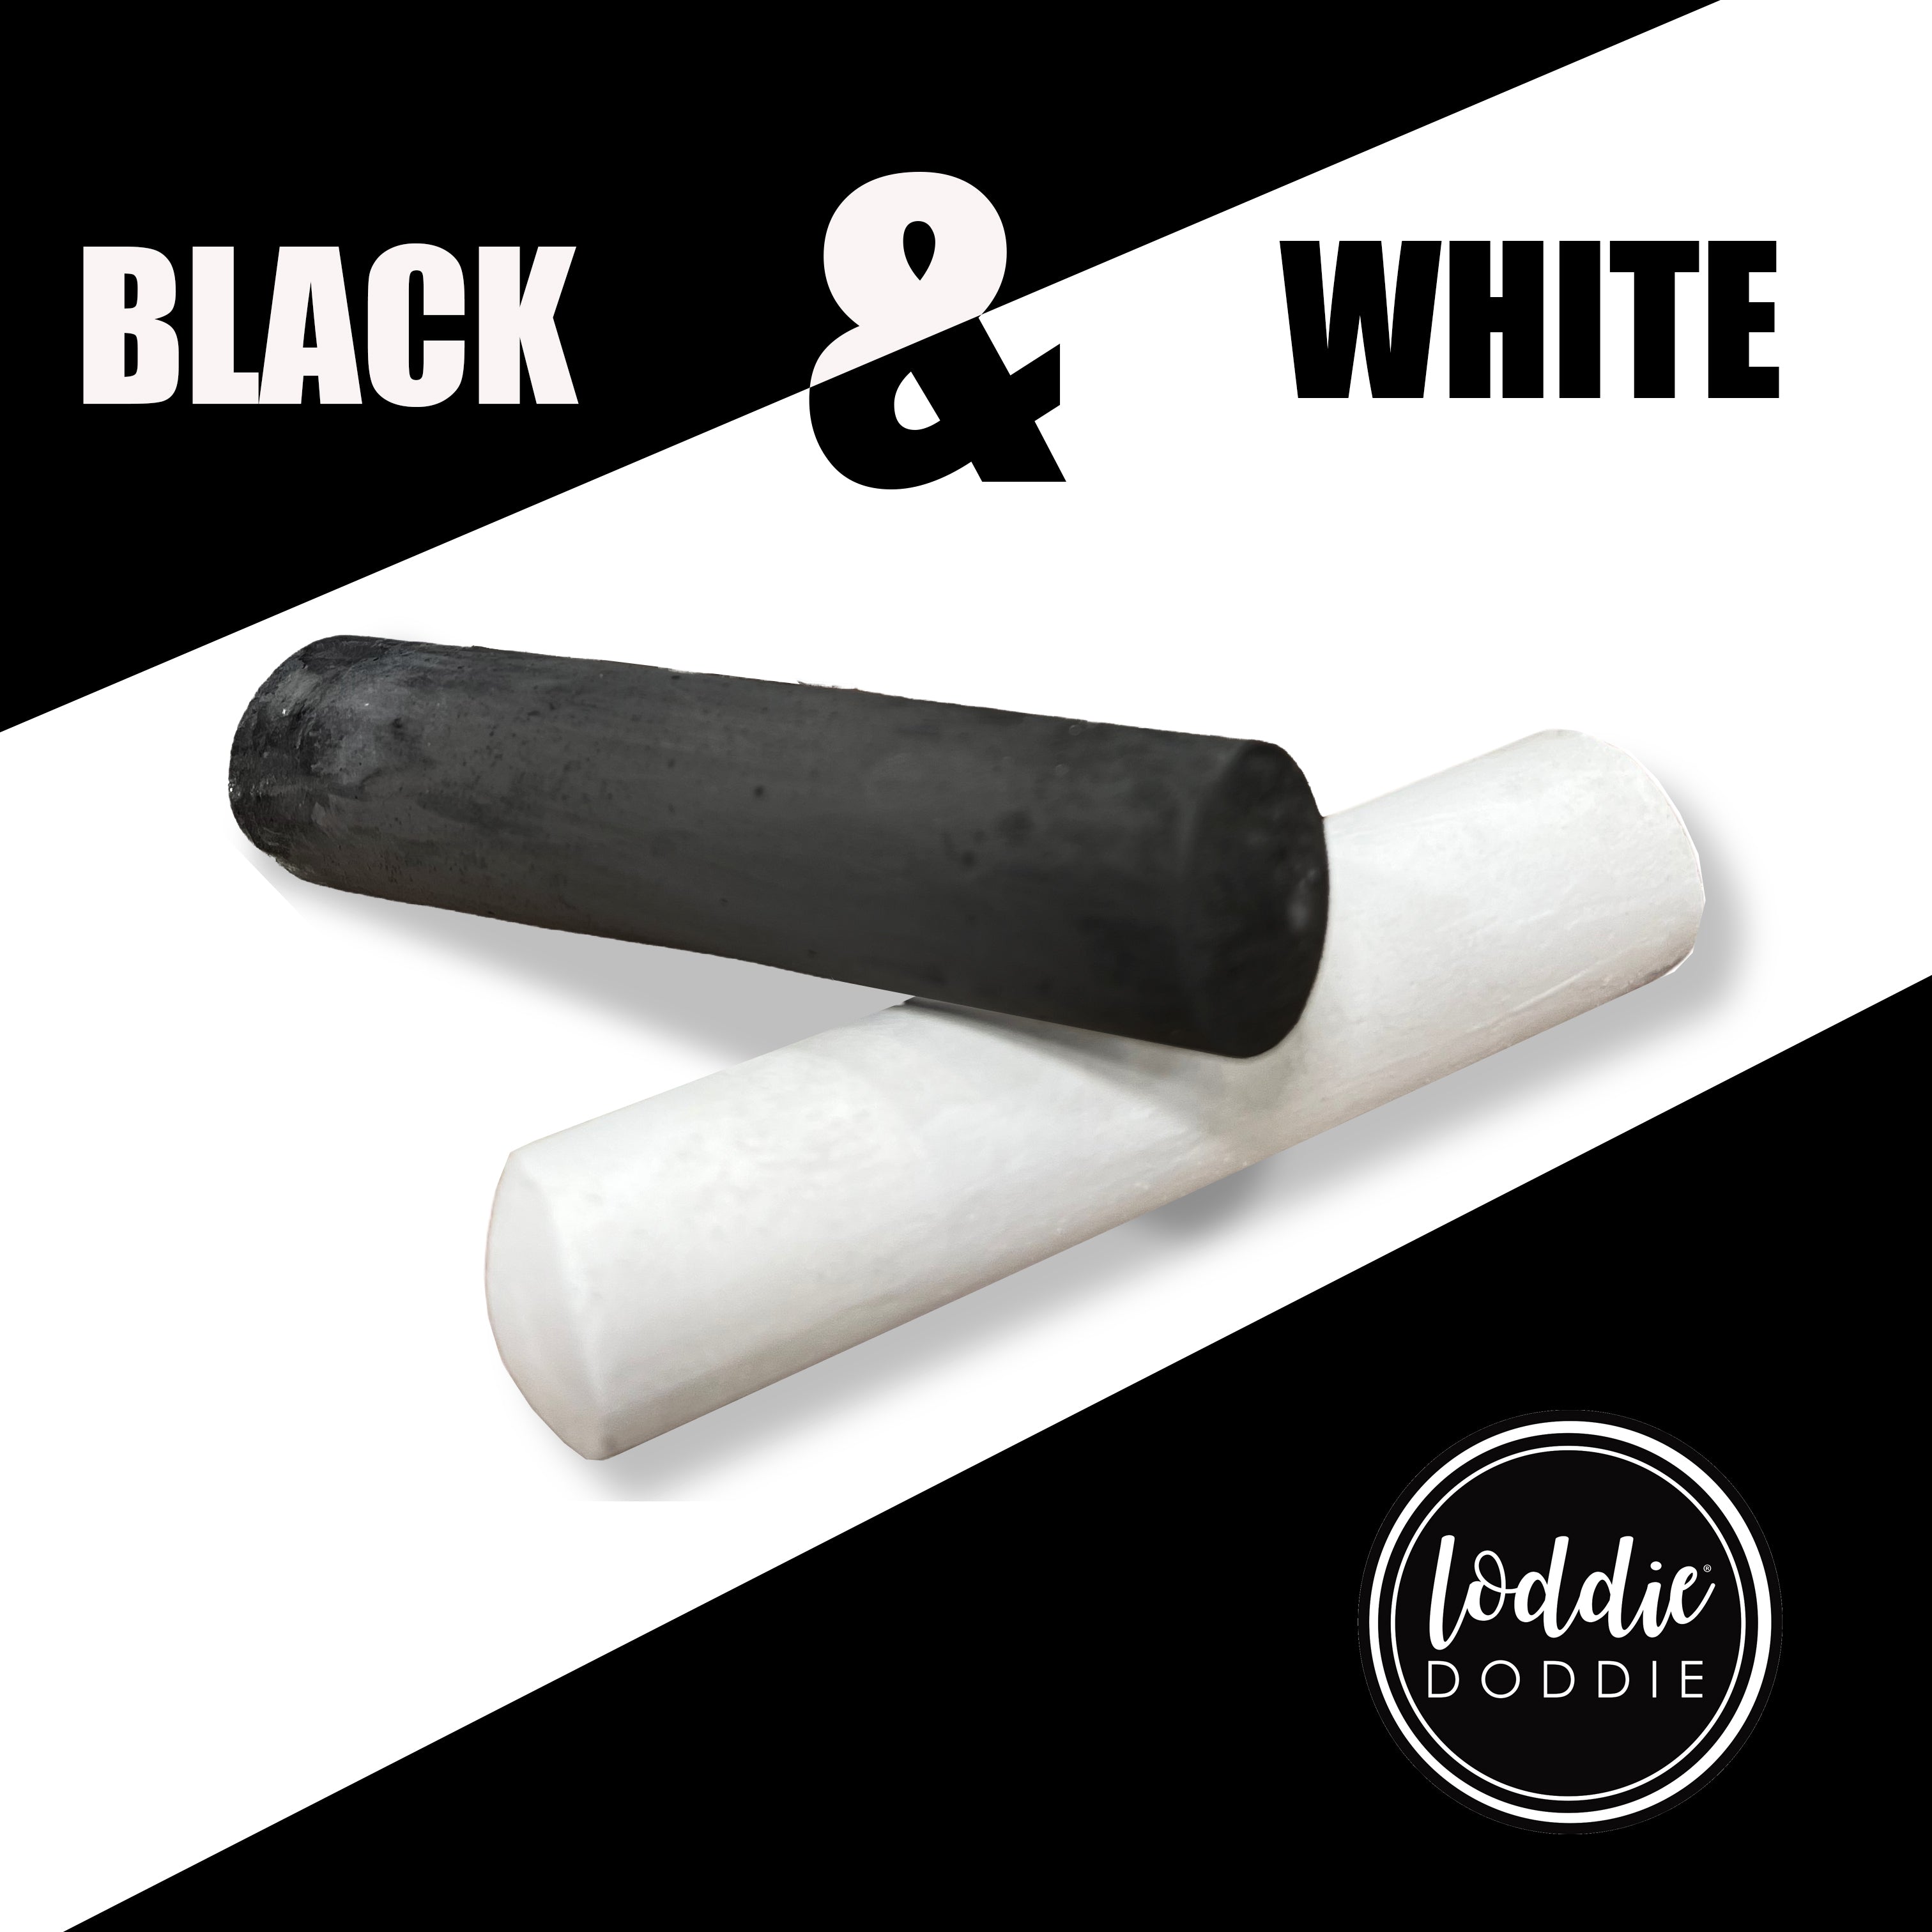 Loddie Doddie 15ct Bucket of Sidewalk Chalk White and Onyx Black